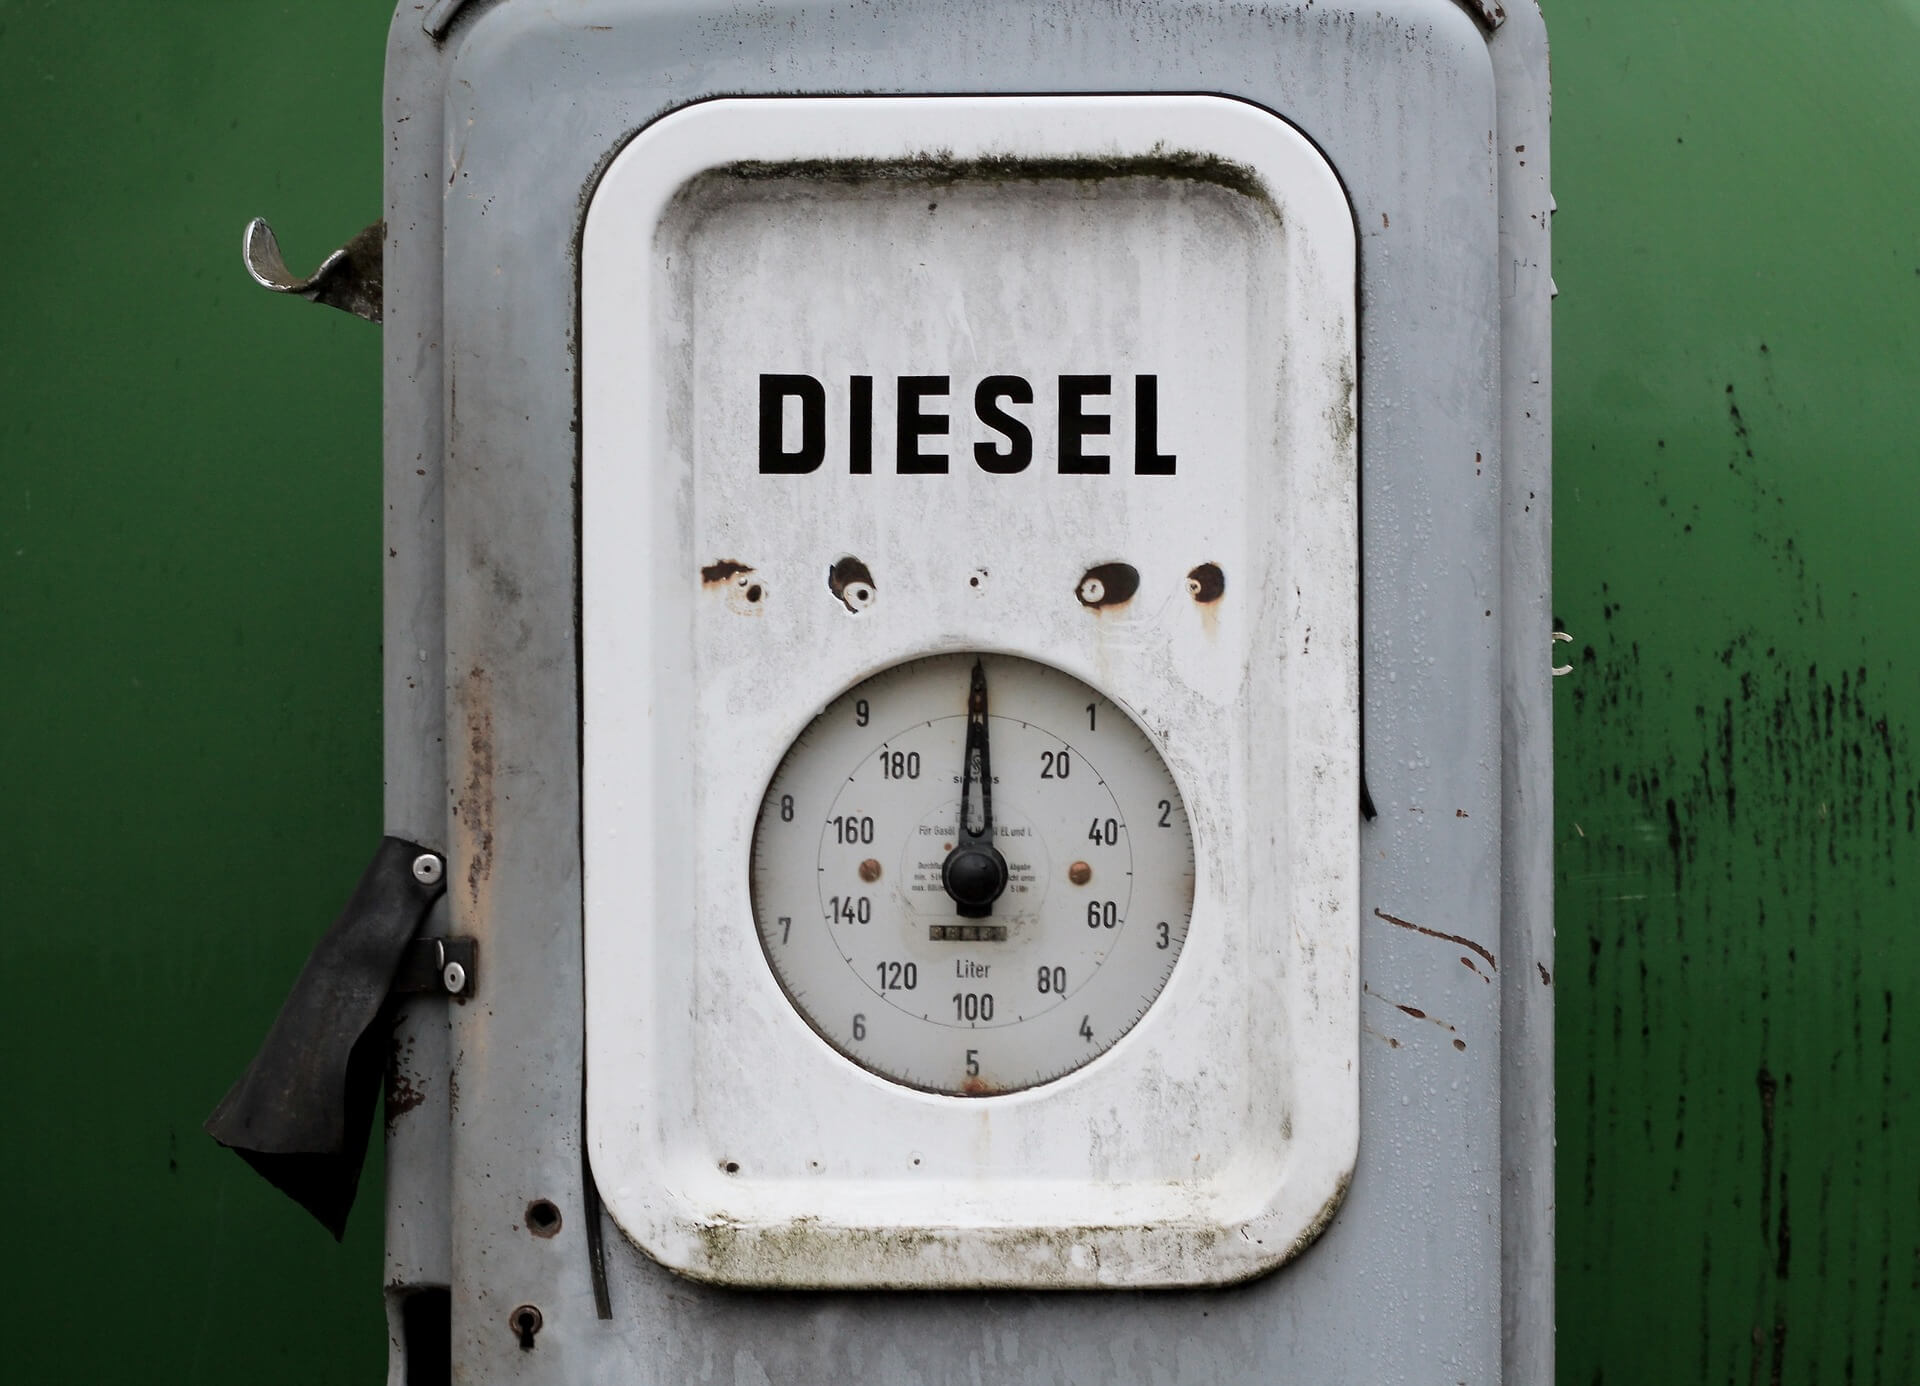 diesel fuel image metre